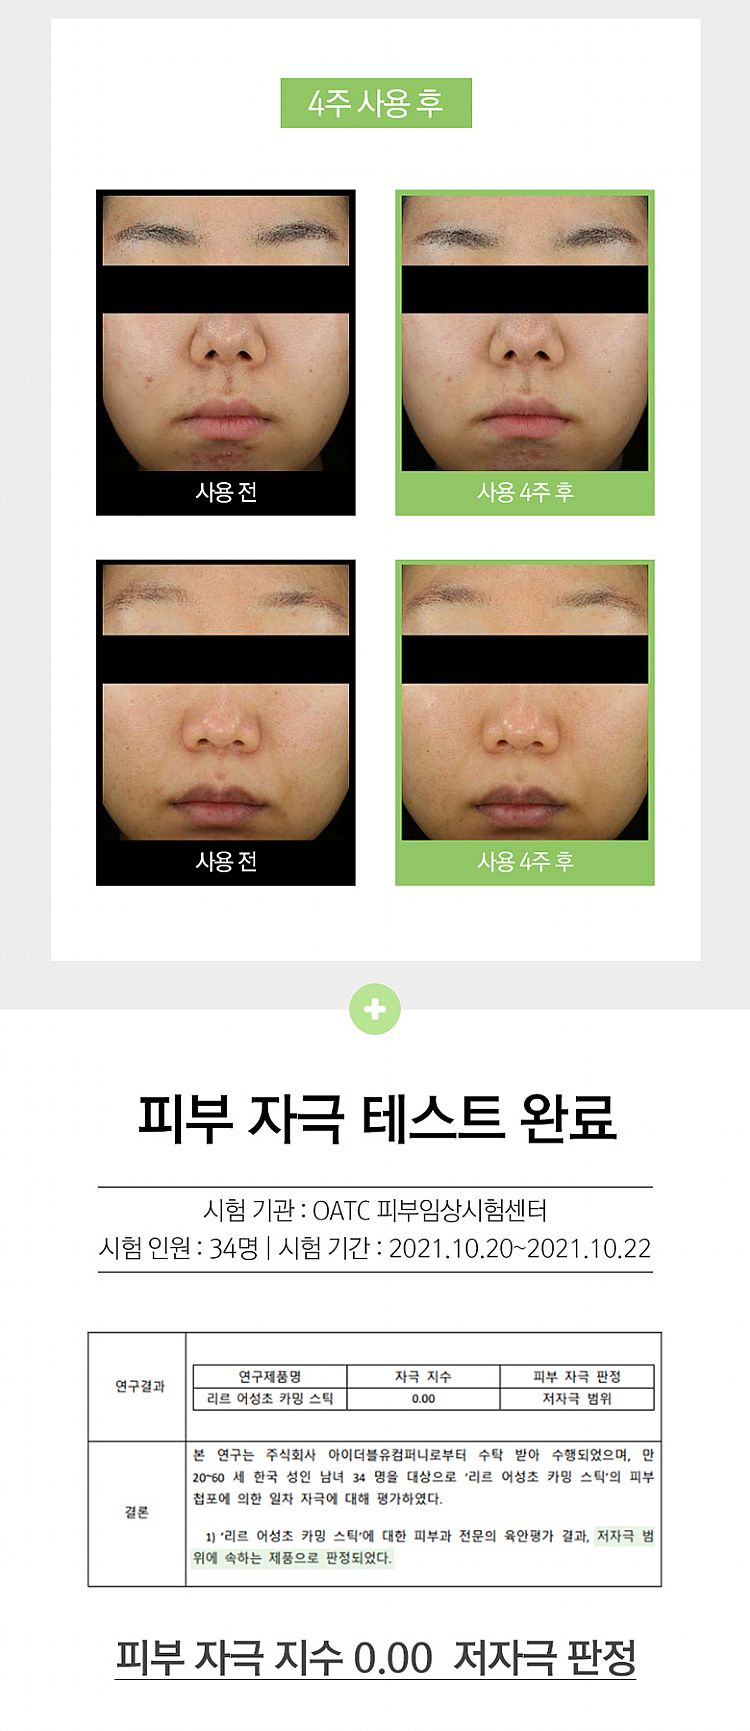 臉部保養 保濕 精華液 臉部保養 韓國 臉部保養